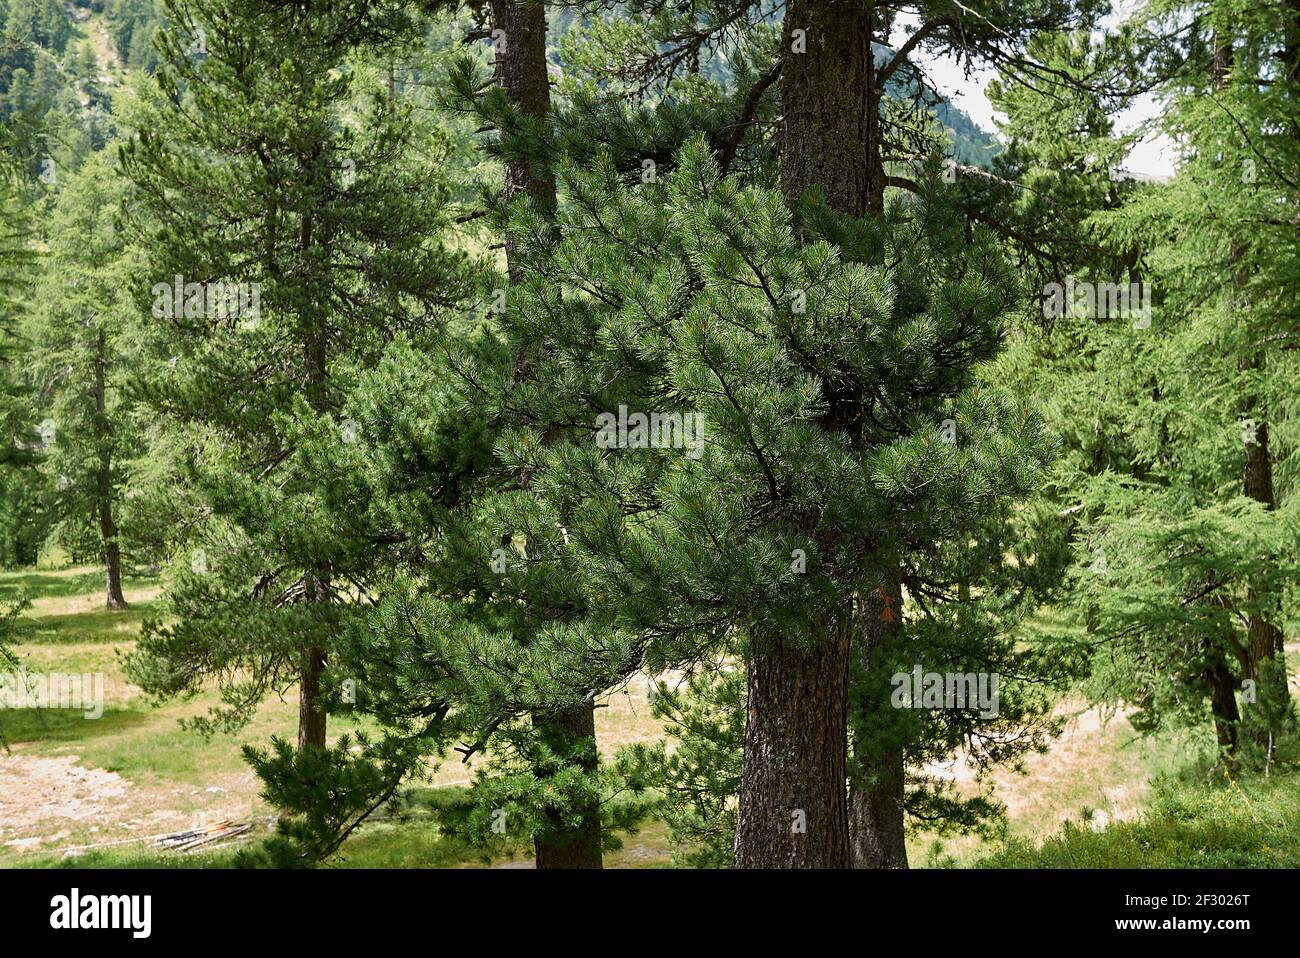 Pinus cembra evergreen tree in Switzerland Stock Photo